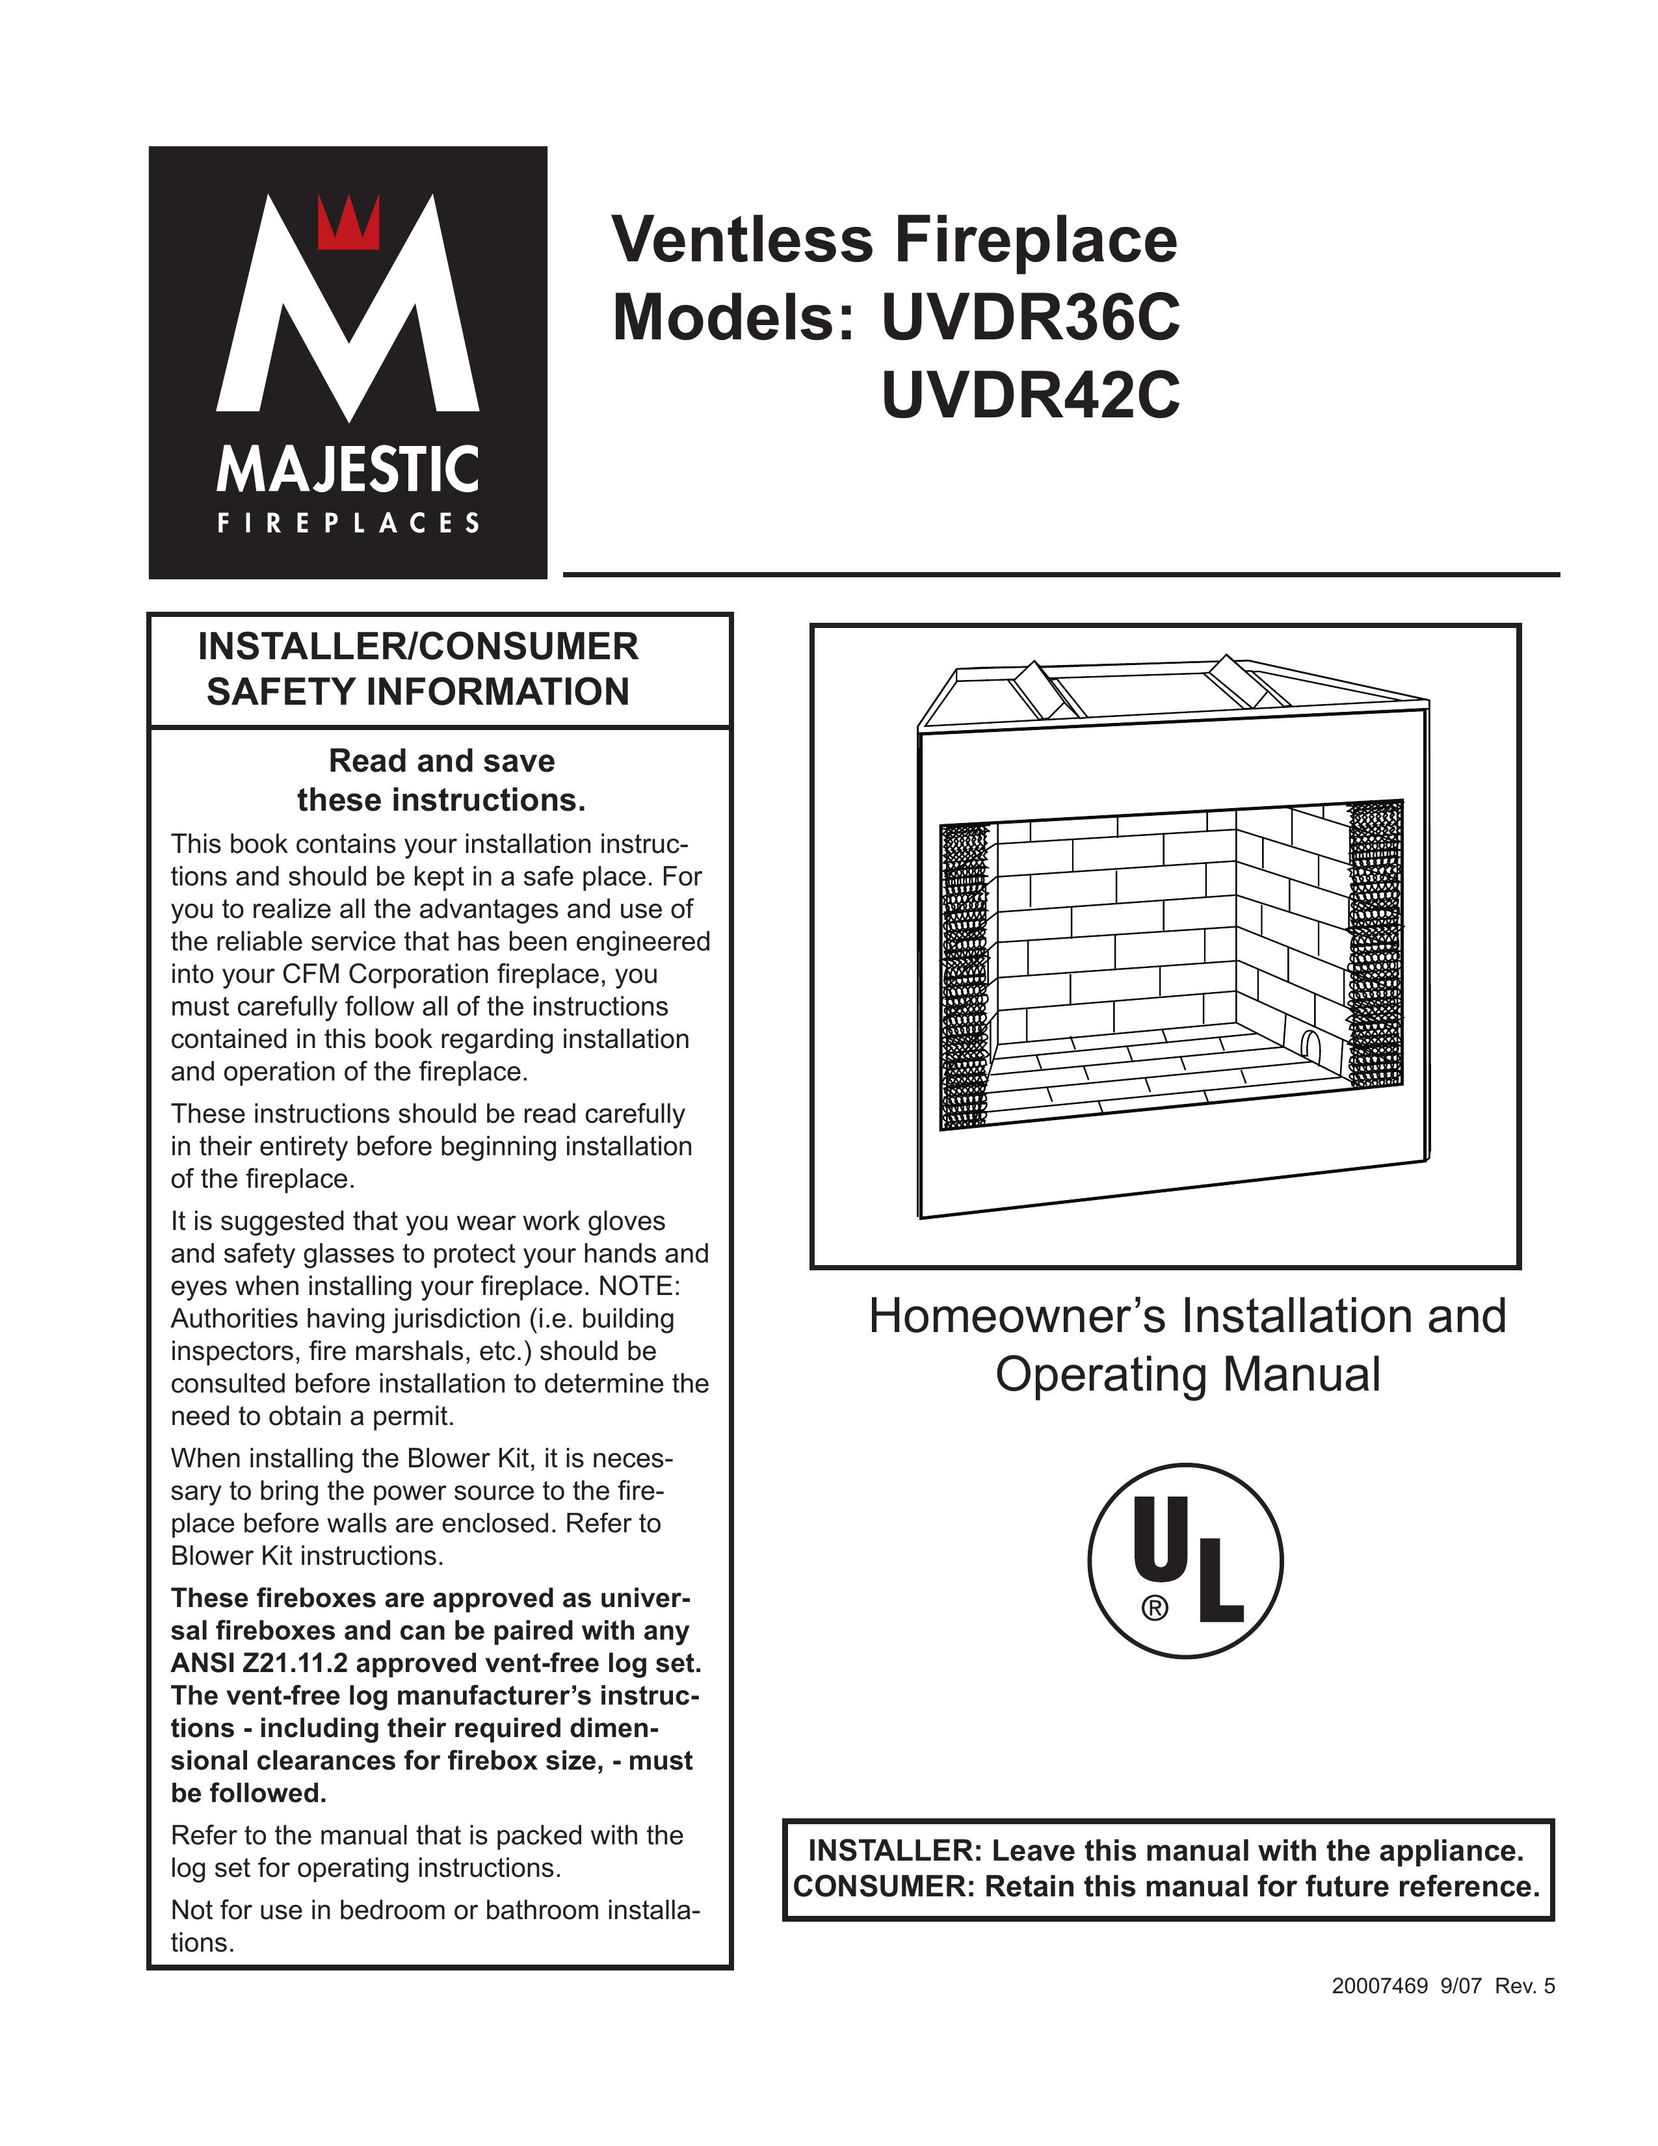 CFM Corporation UVDR42C Indoor Fireplace User Manual